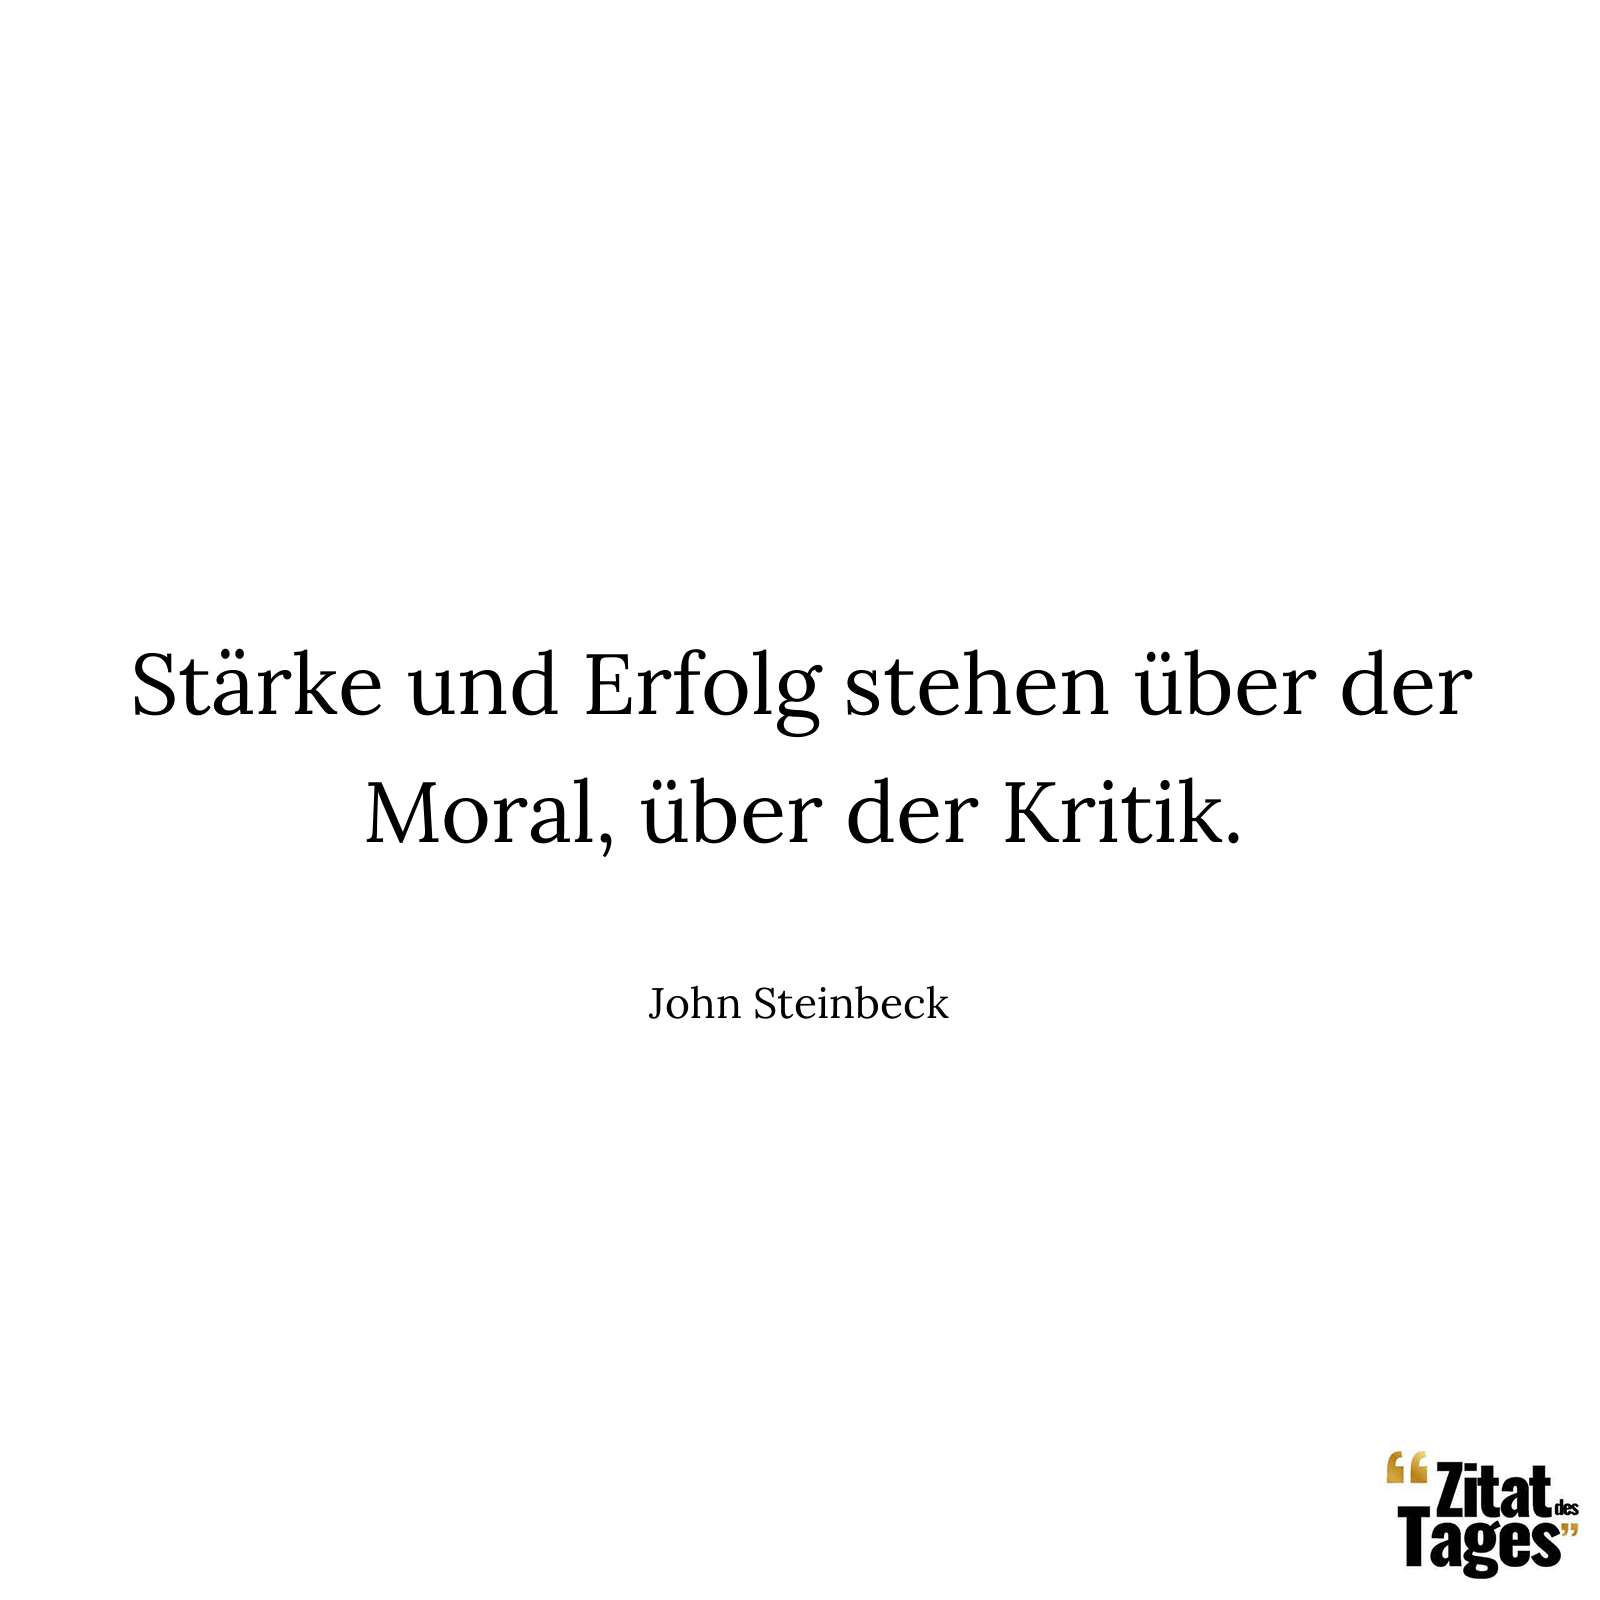 Stärke und Erfolg stehen über der Moral, über der Kritik. - John Steinbeck